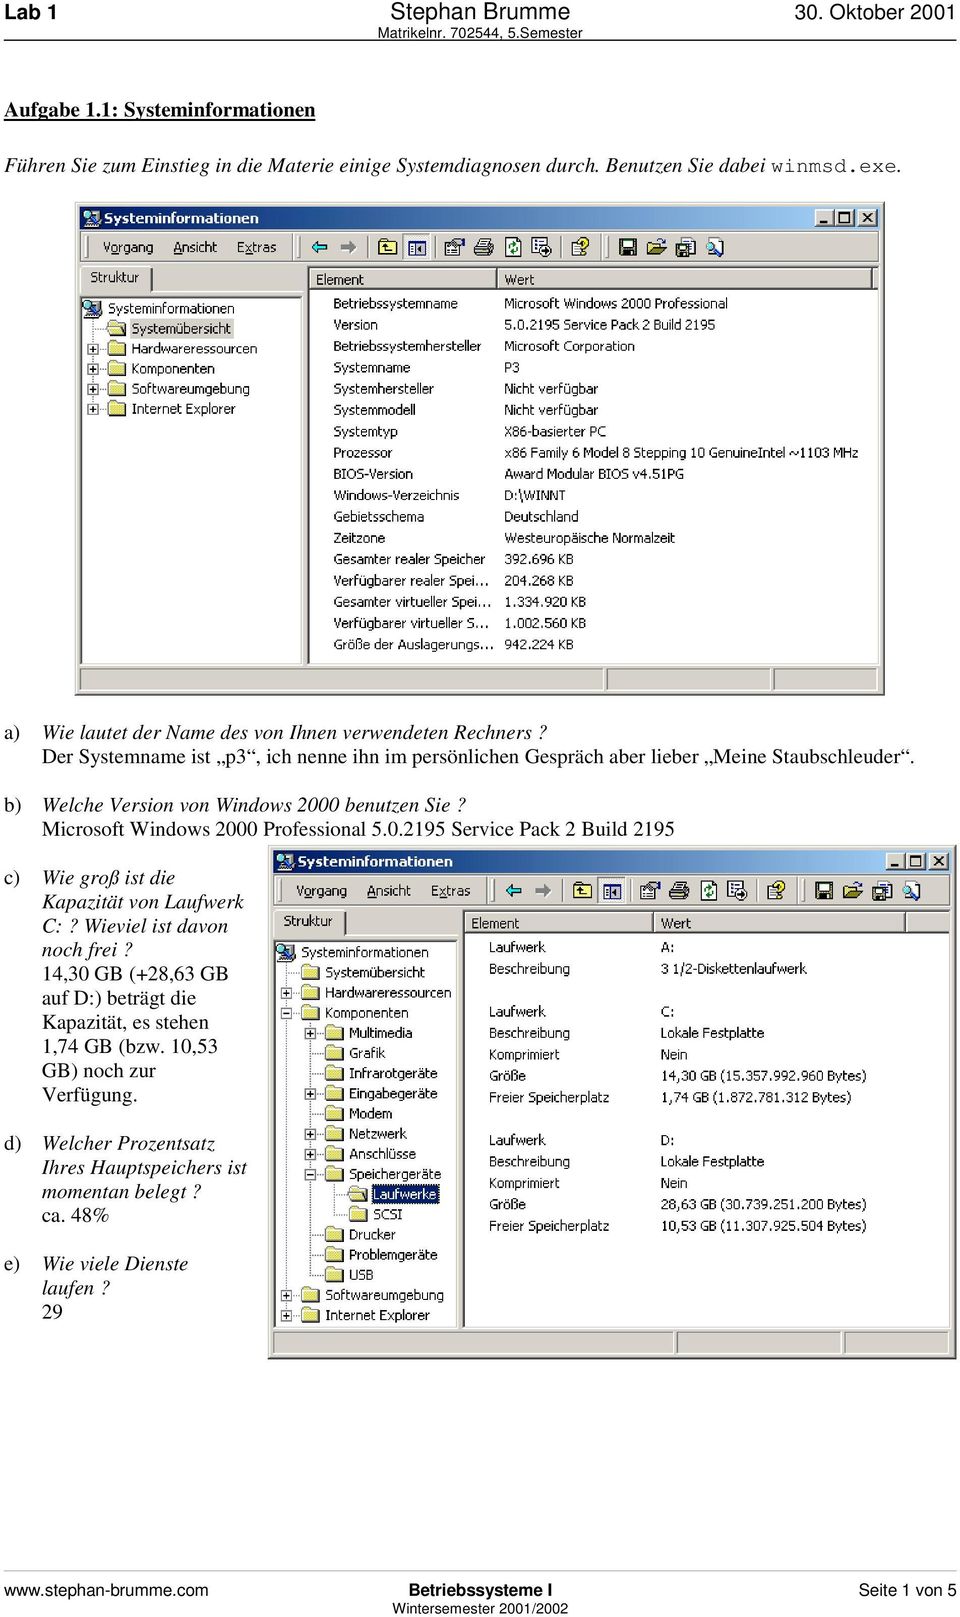 b) Welche Version von Windows 2000 benutzen Sie? Microsoft Windows 2000 Professional 5.0.2195 Service Pack 2 Build 2195 c) Wie groß ist die Kapazität von Laufwerk C:?